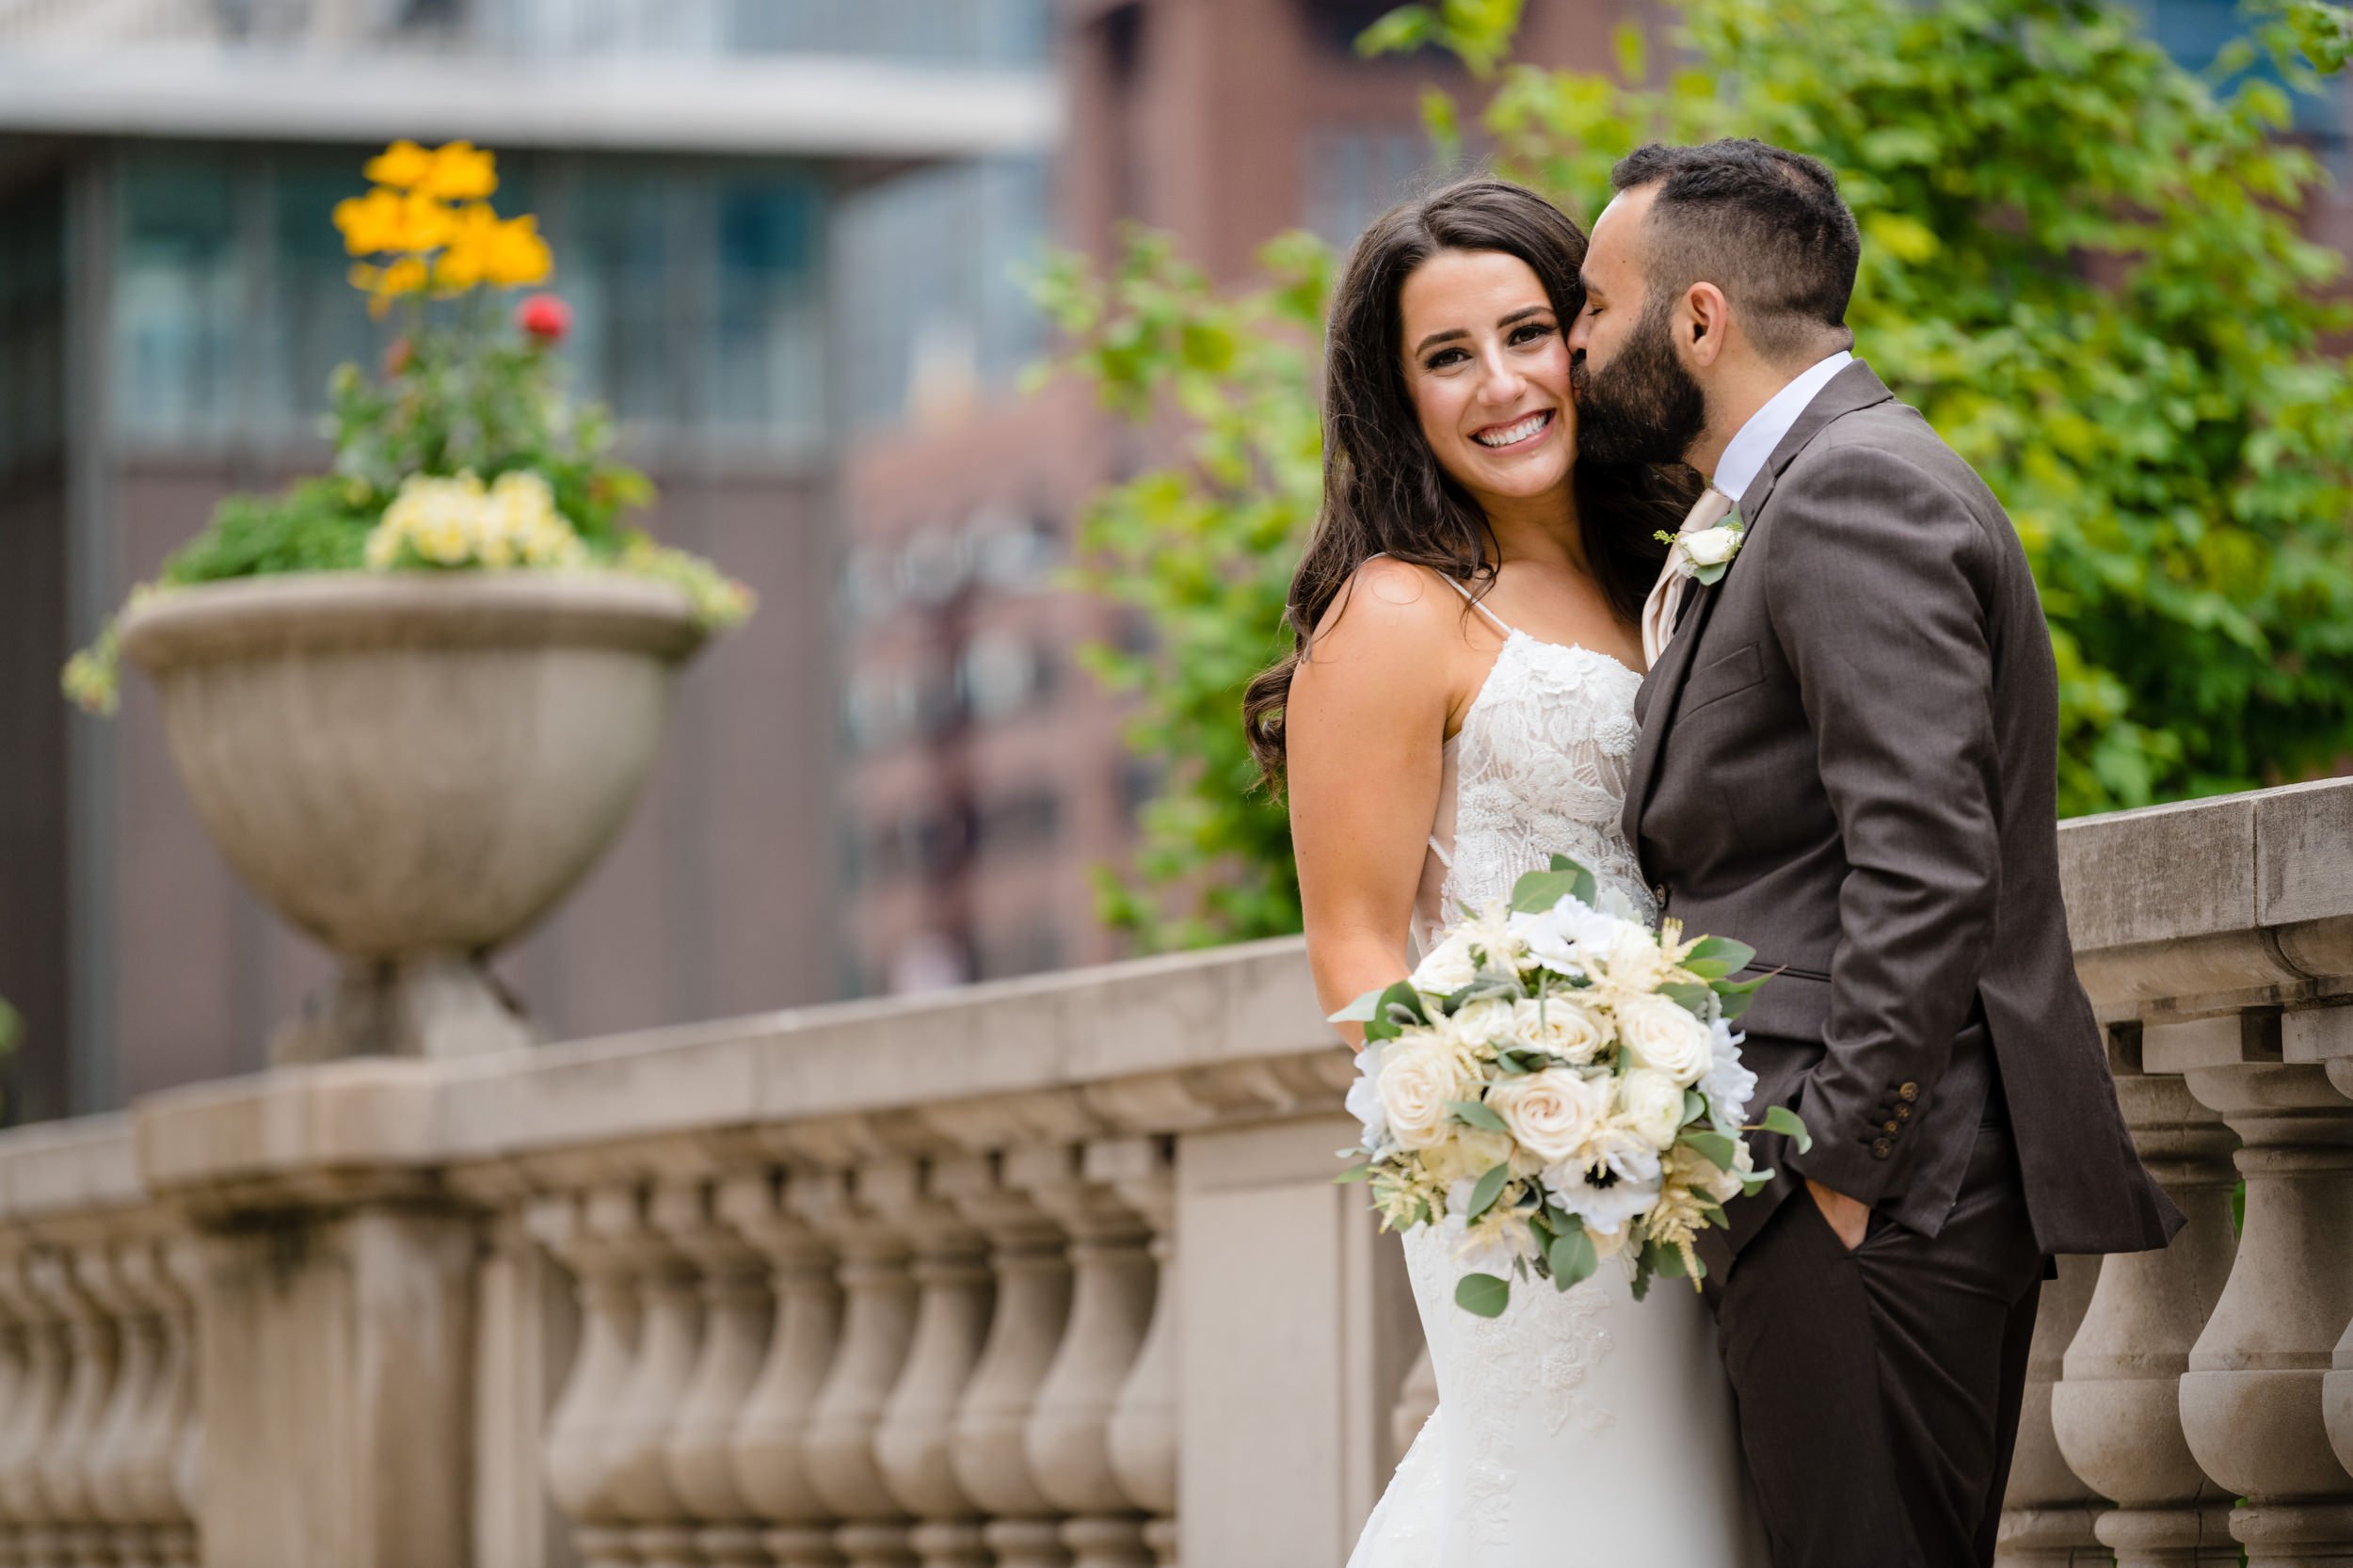 Chicago Riverwalk | Outdoor Wedding Portrait | Chicago IL